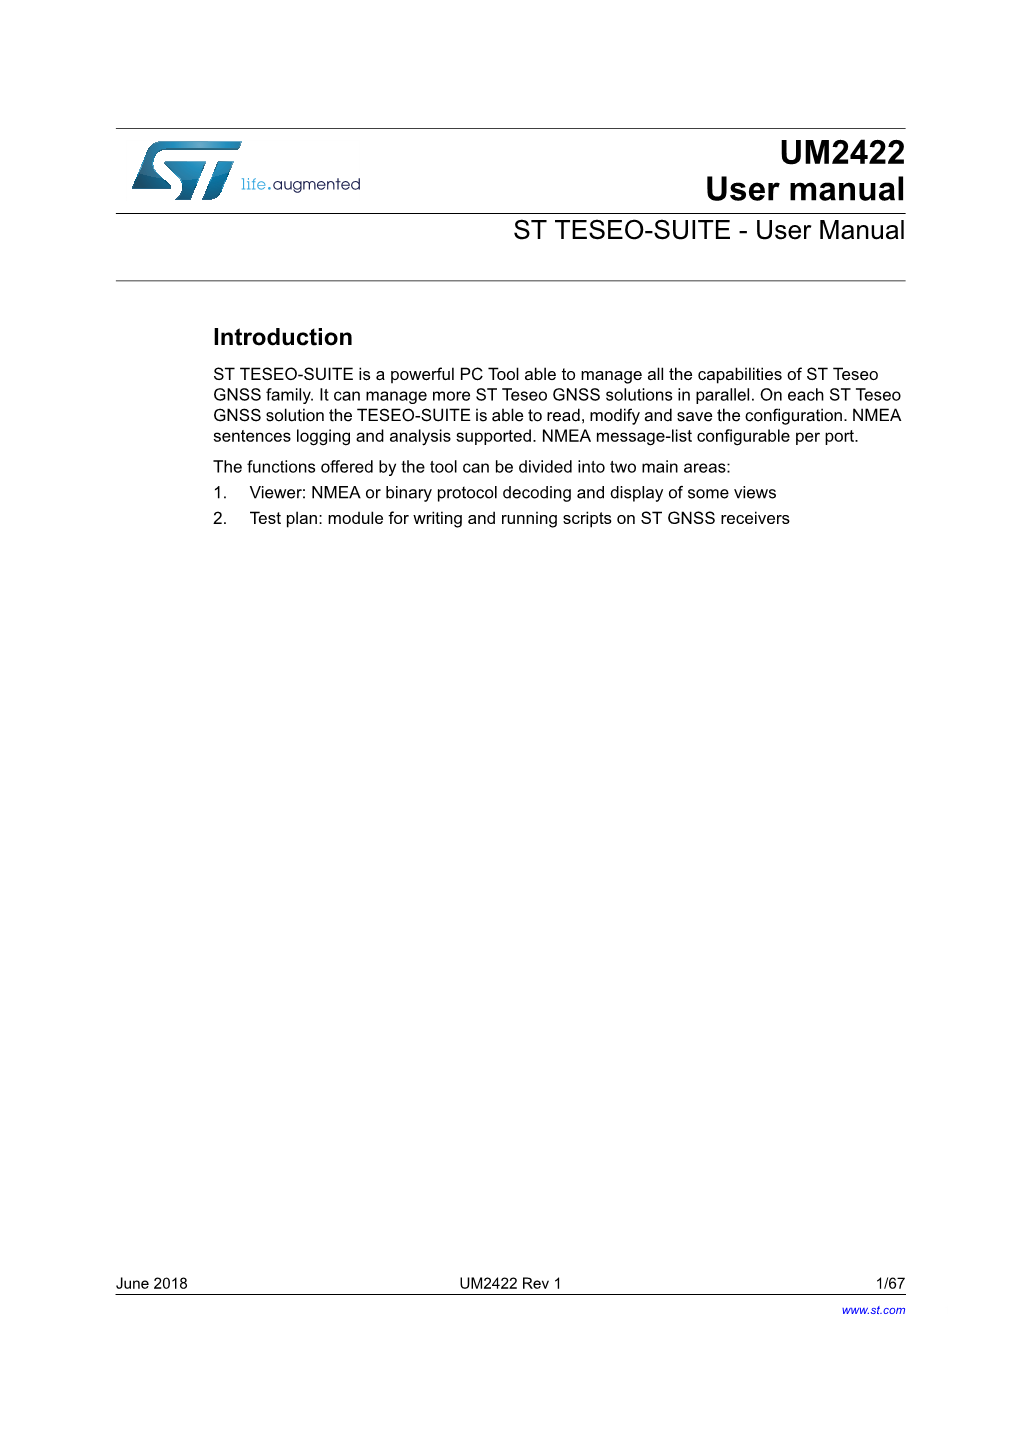 UM2422 User Manual ST TESEO-SUITE - User Manual